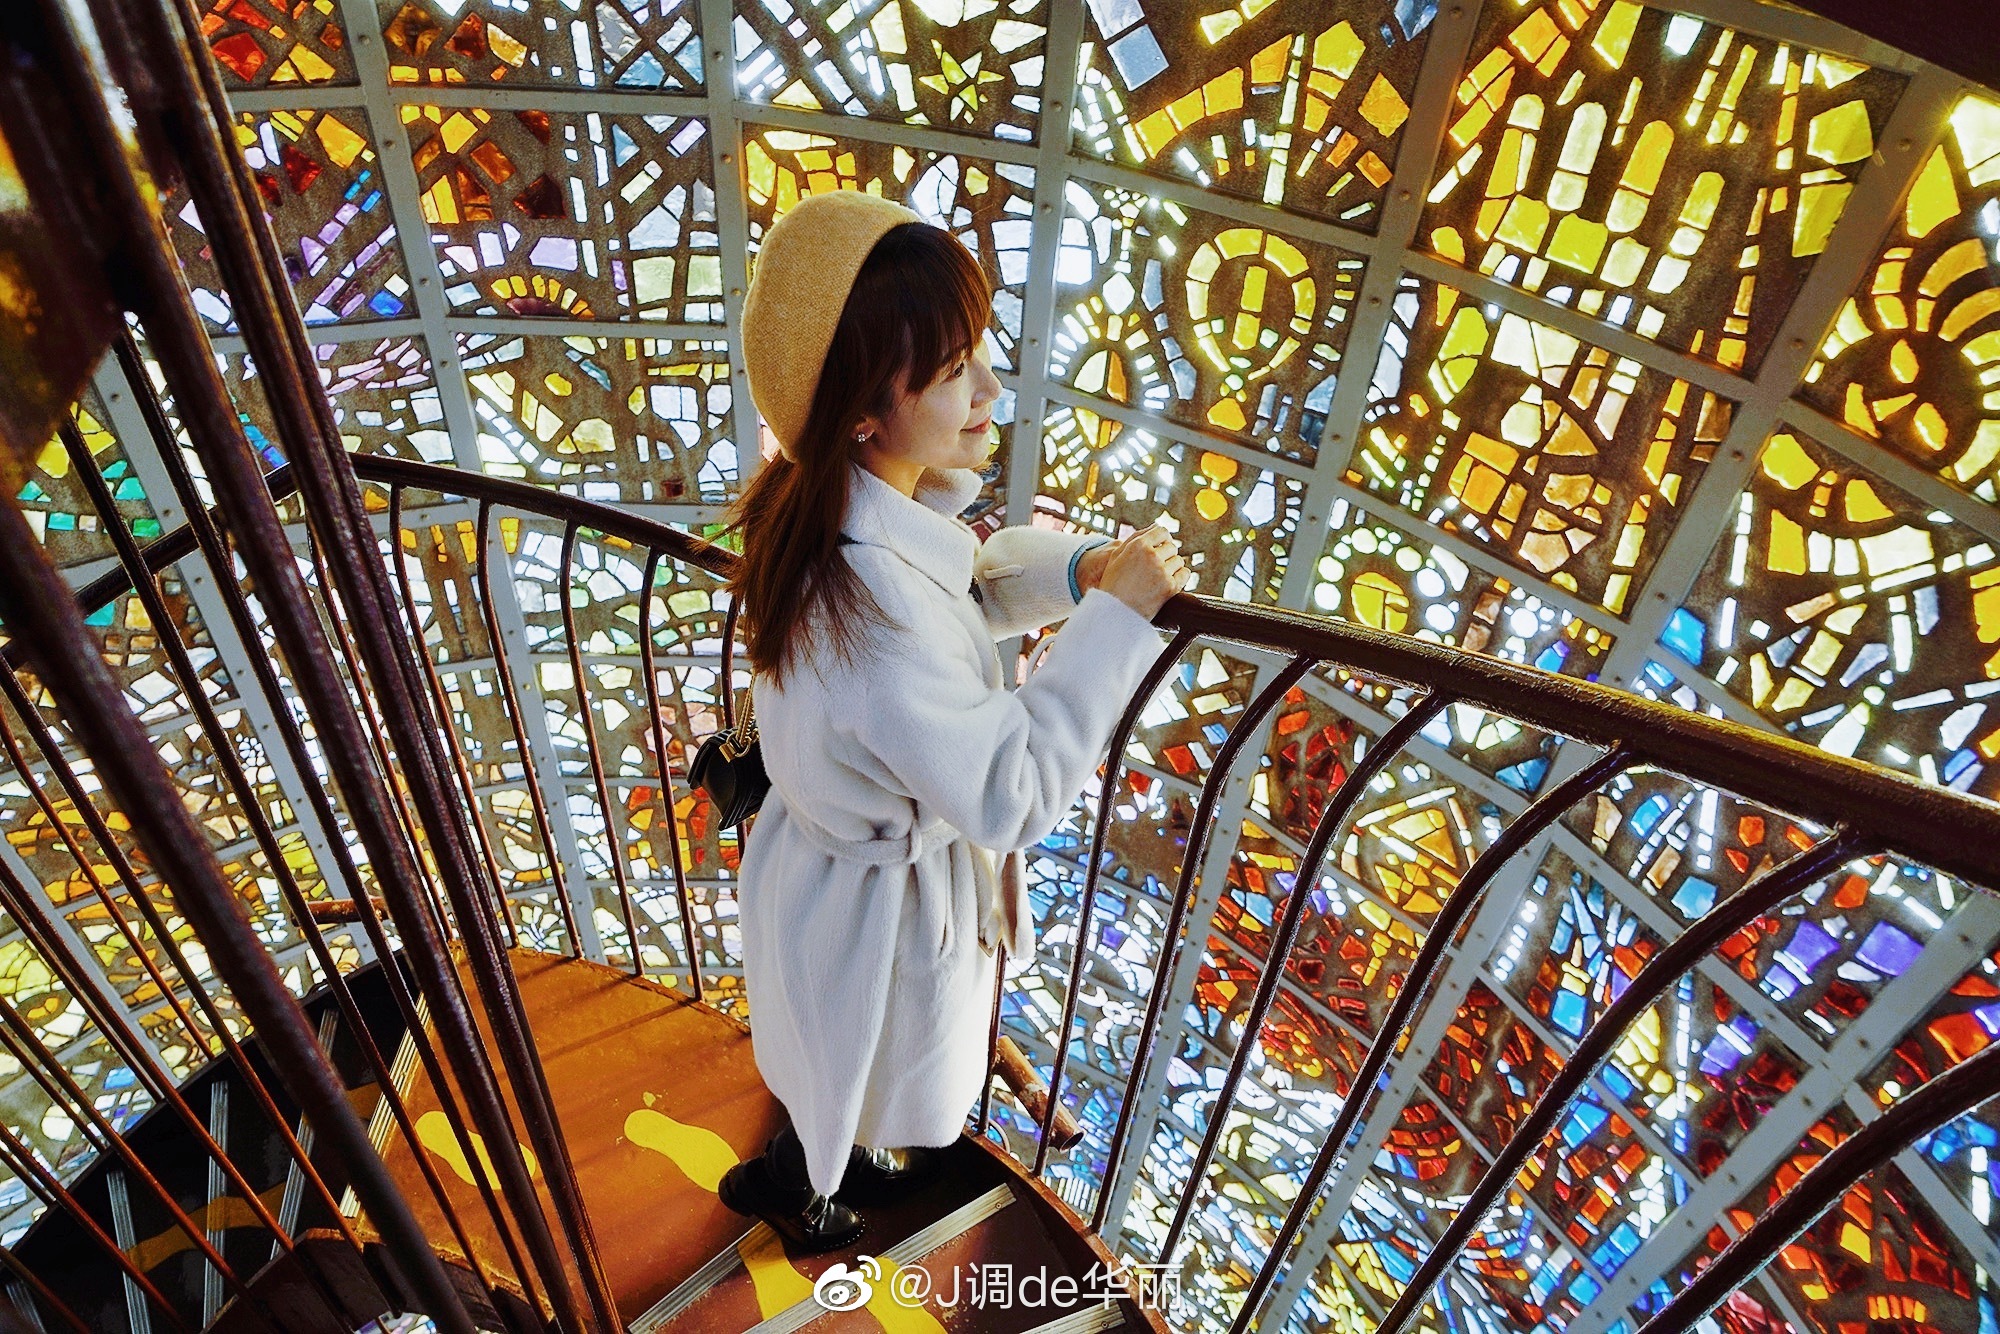 【携程攻略】箱根箱根玻璃之森美术馆景点,梦幻仙境～玻璃之森美术馆|箱根最值得打卡的美术馆。 箱根玻璃之森…